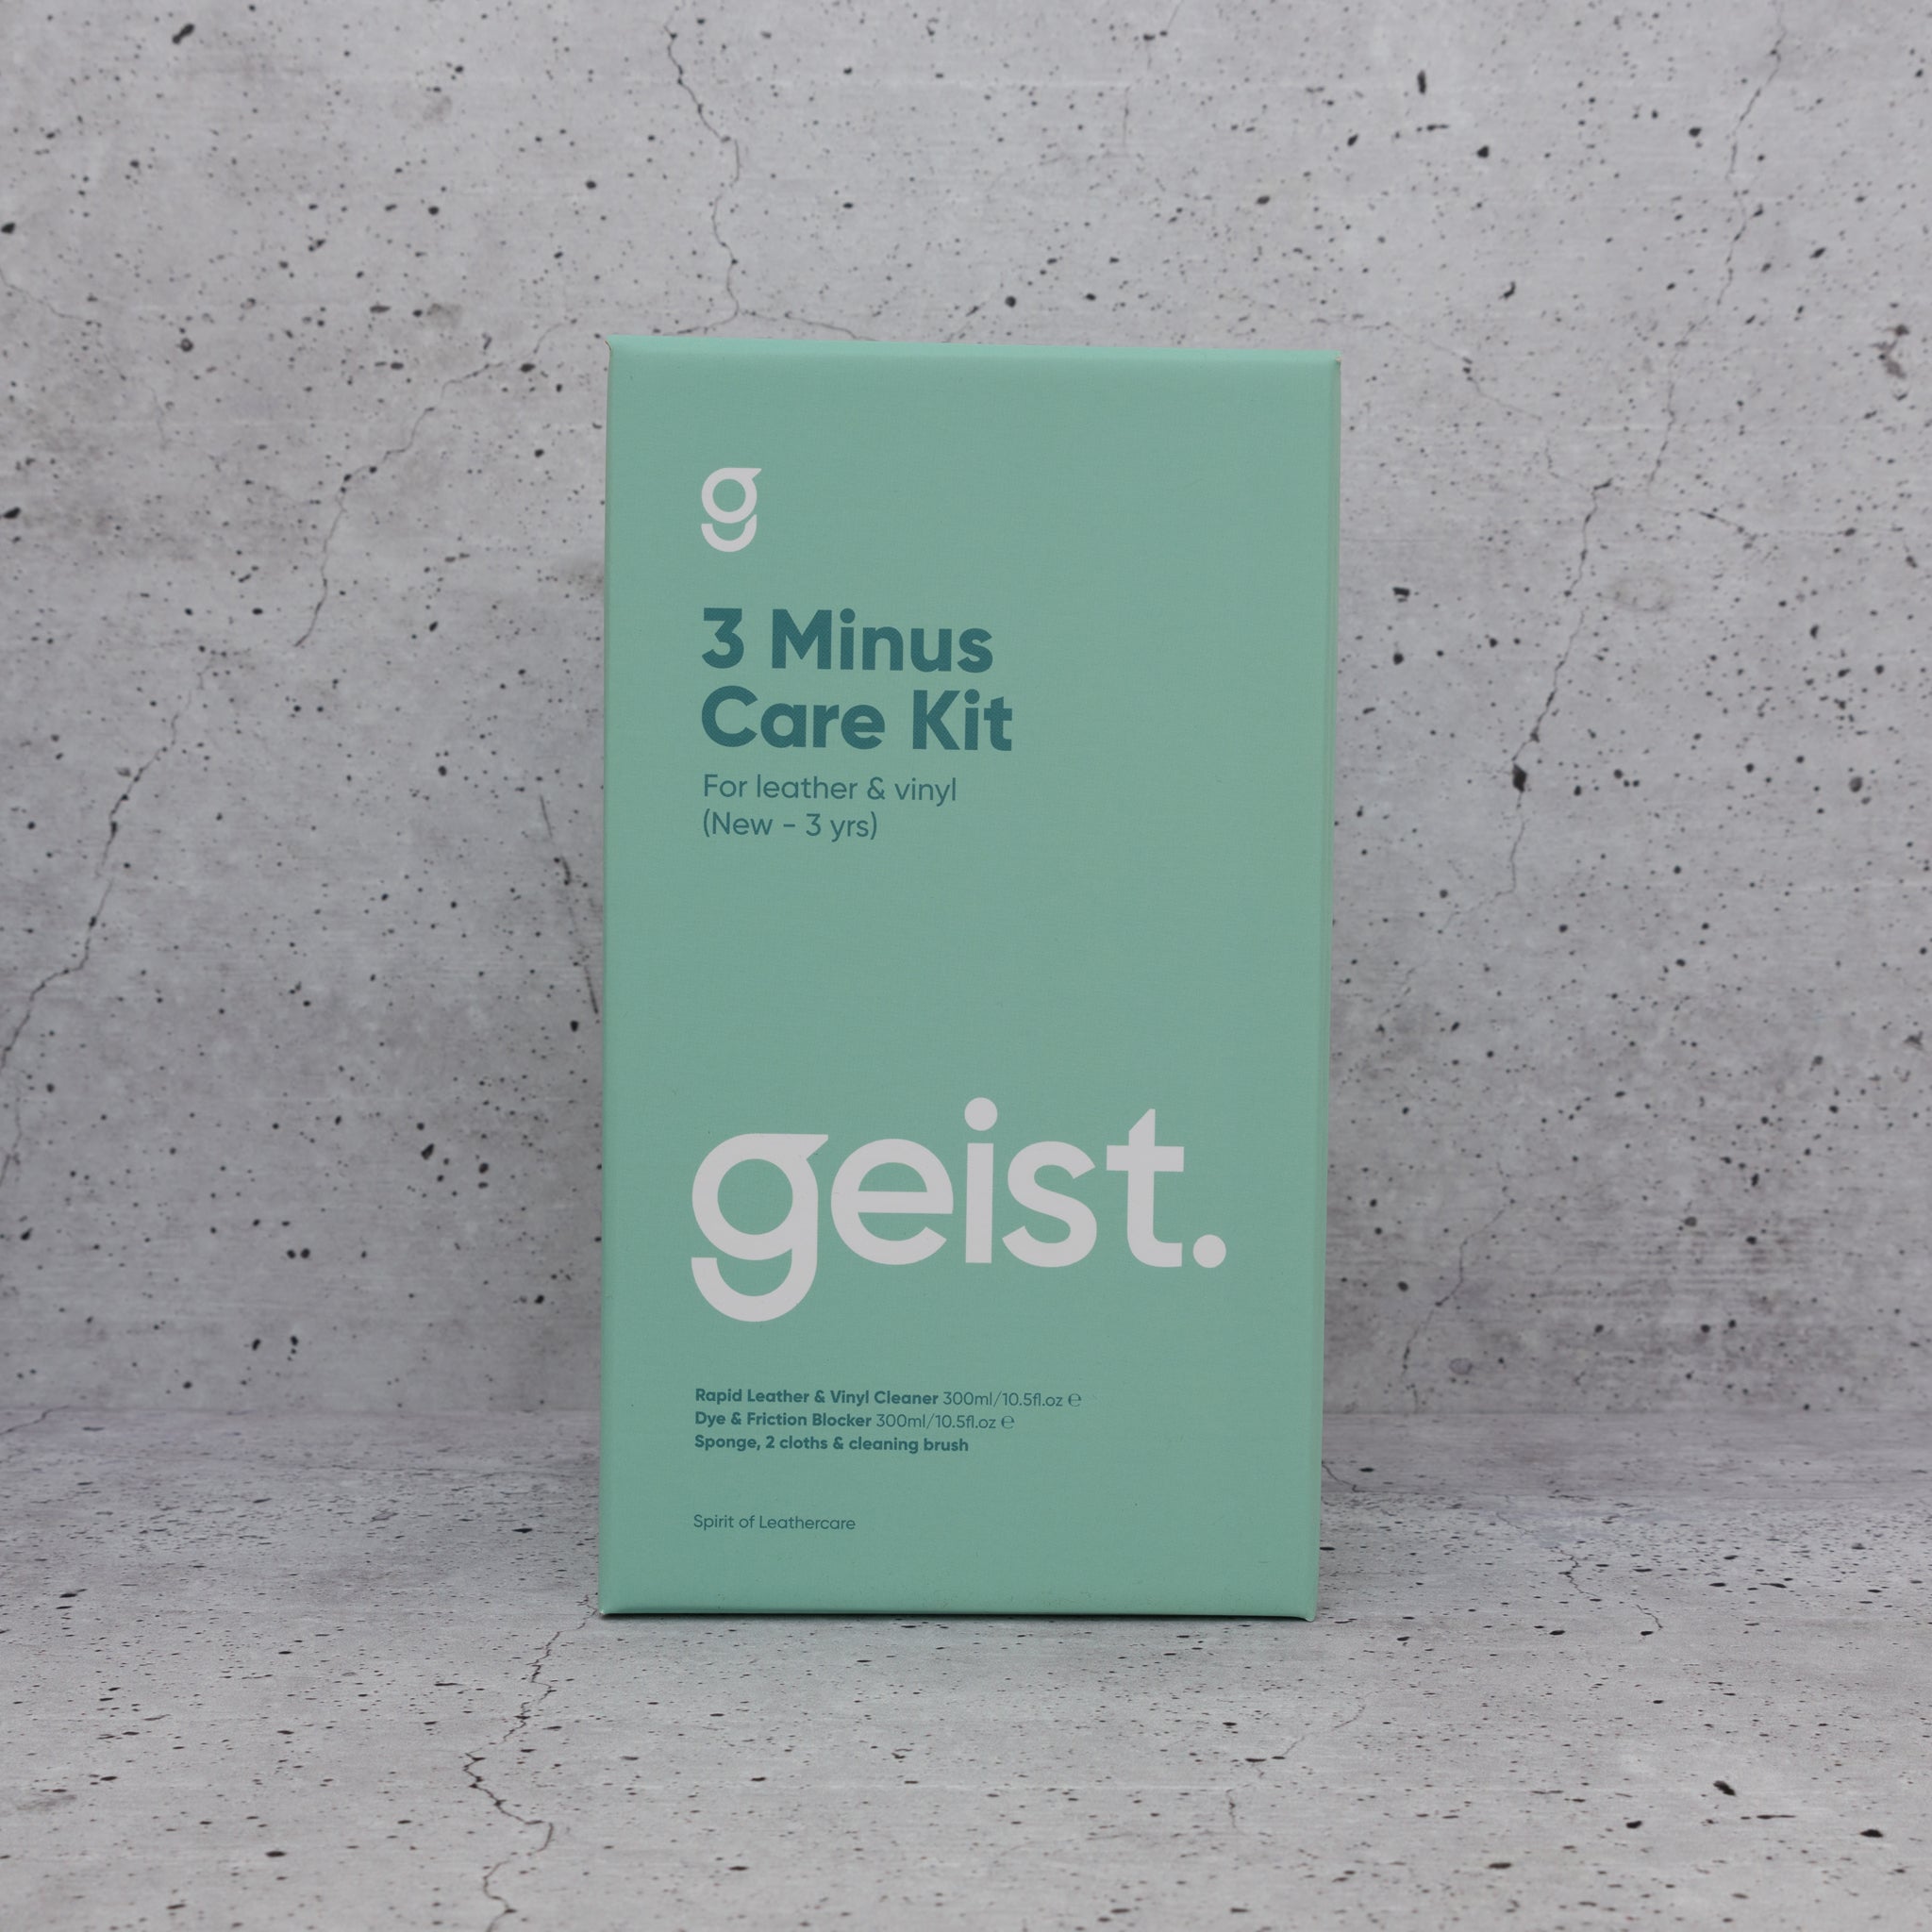 Geist 3 Minus Leather & Vinyl Care Kit